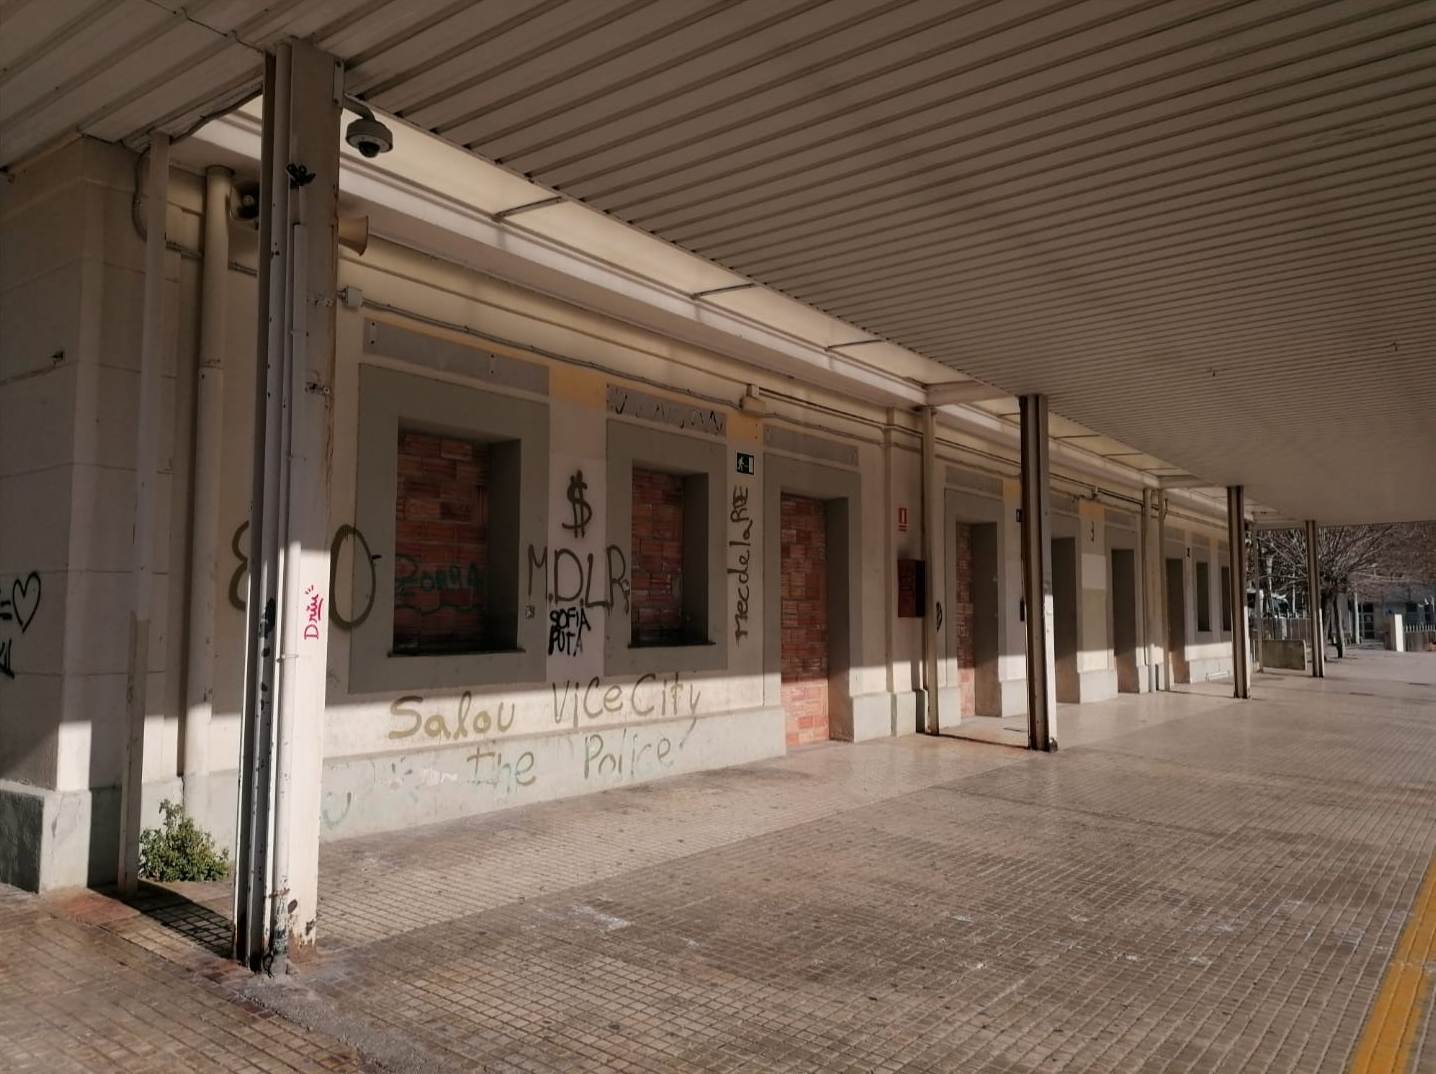 Se cumplen dos años del cierre de la antigua estación de tren de Salou